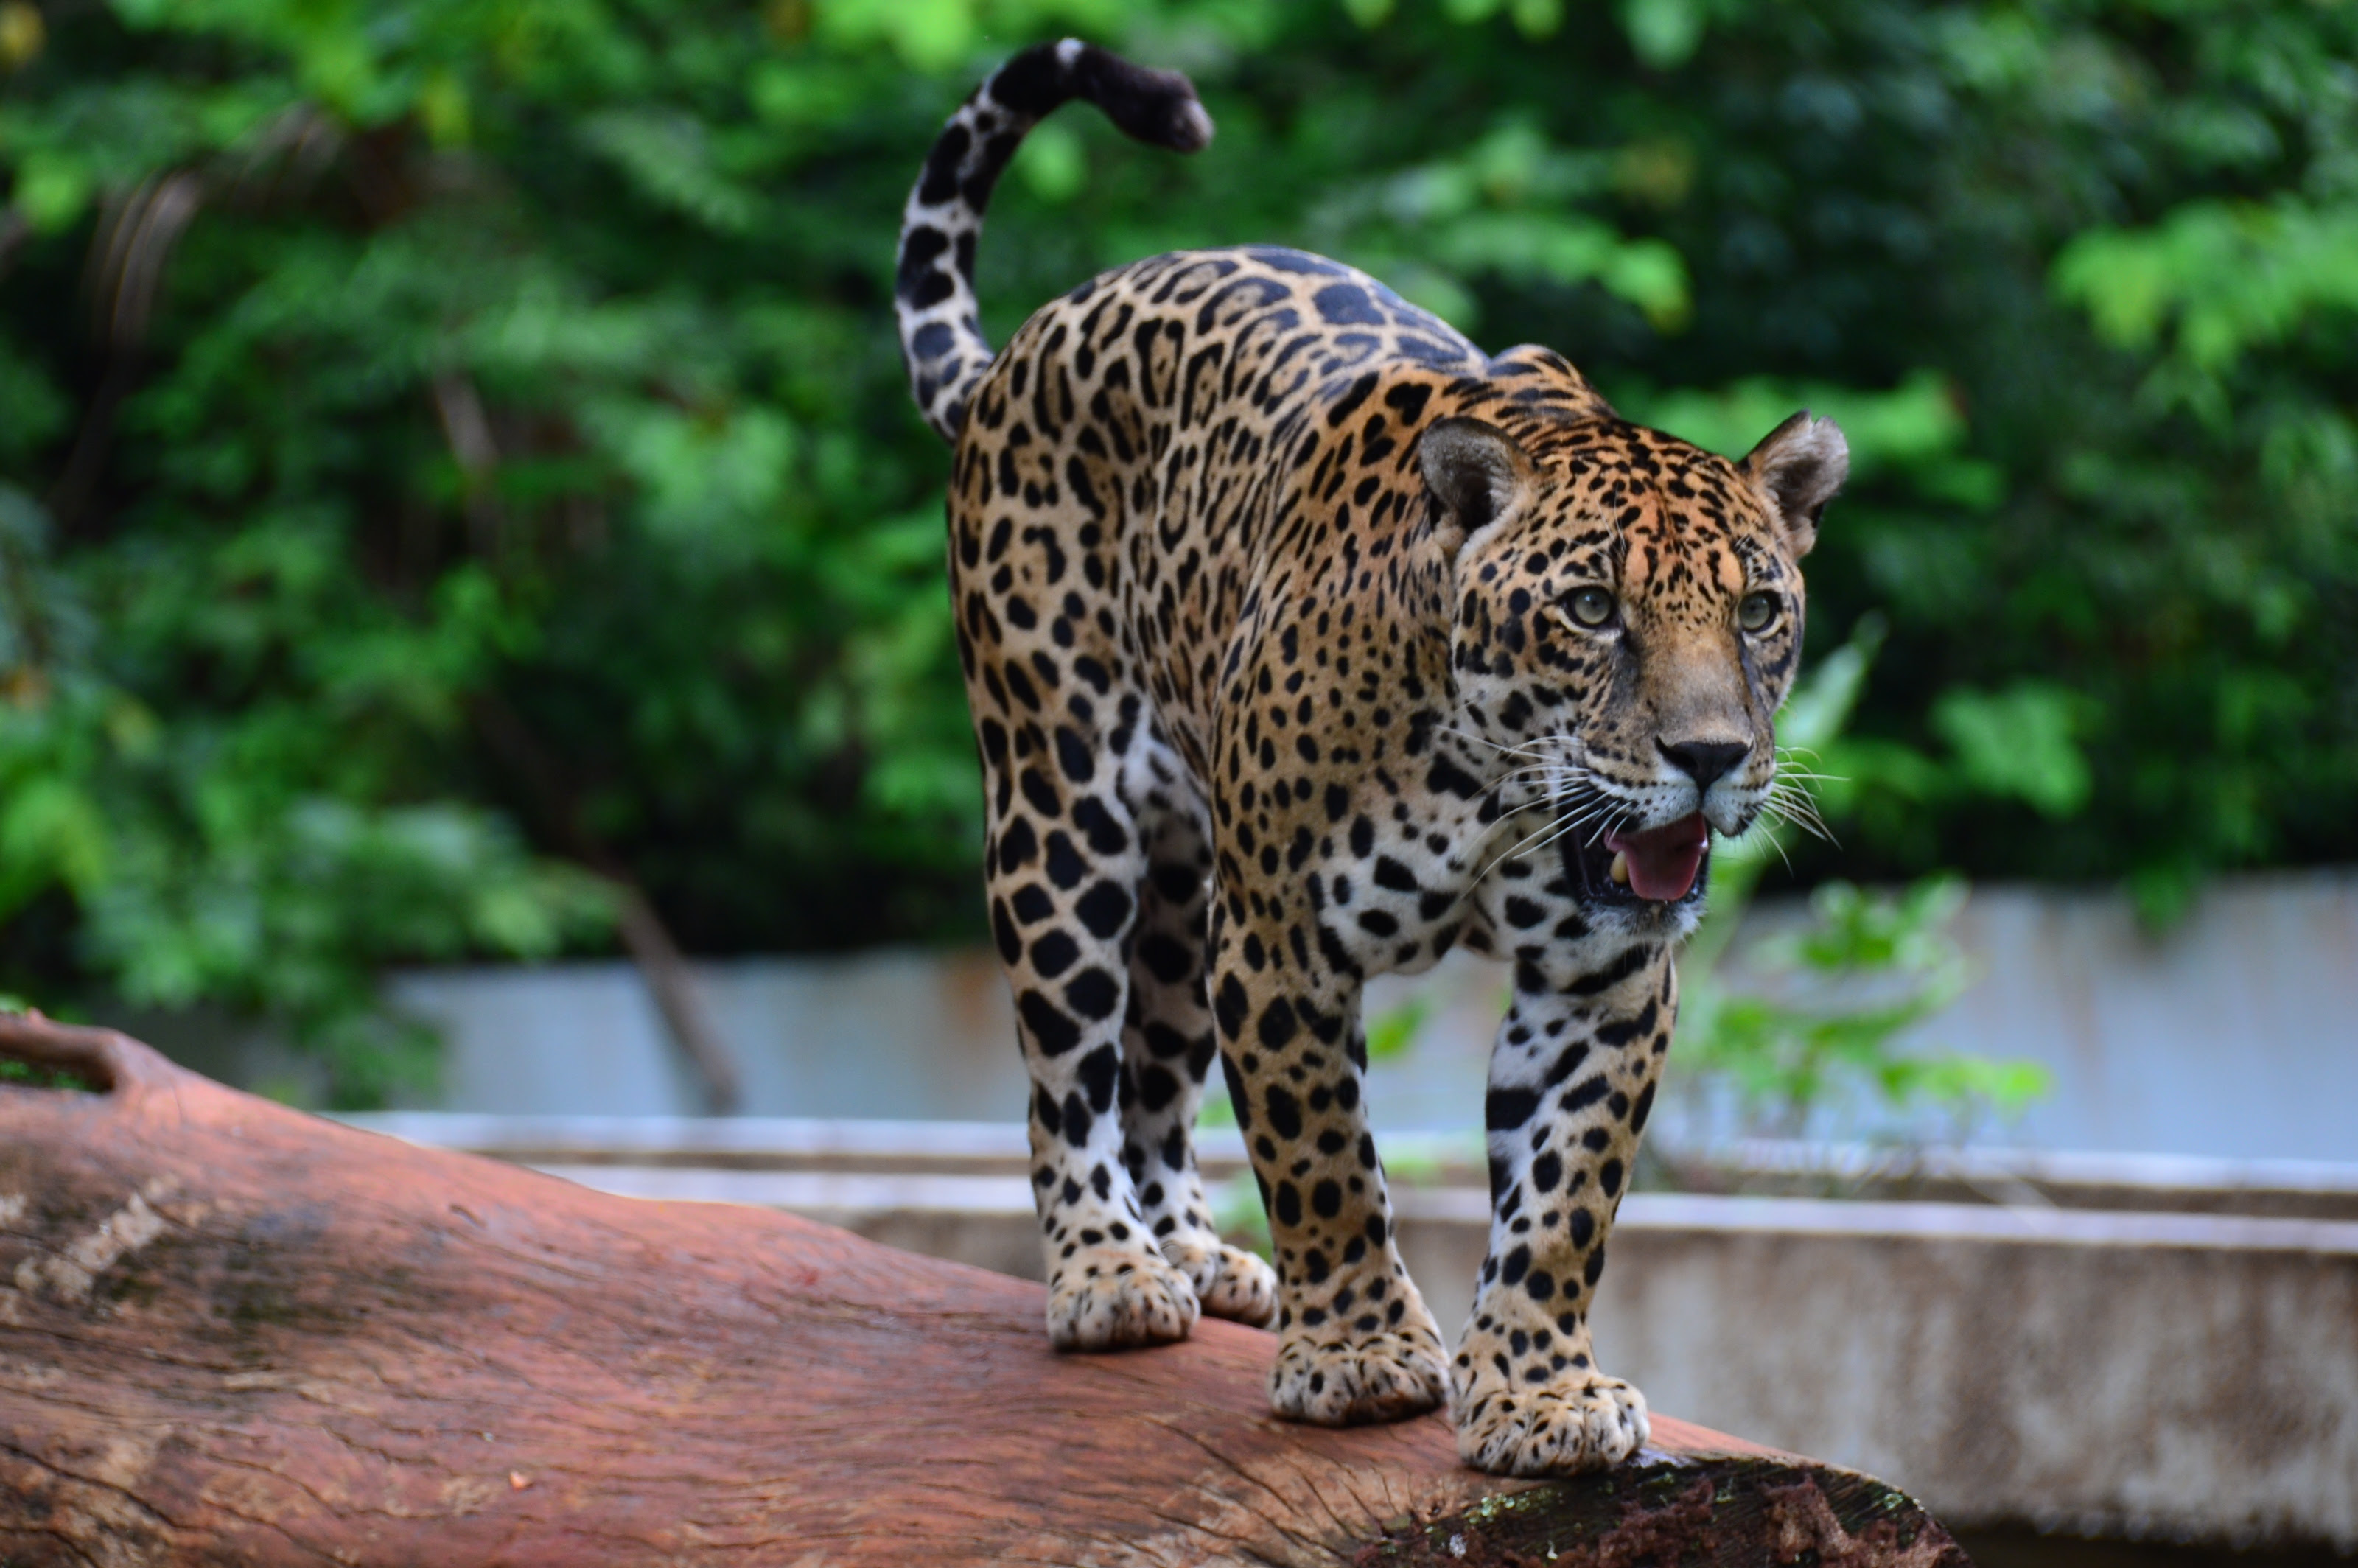  Parque Zoobotânico de Carajás estará fechado nesta sexta-feira